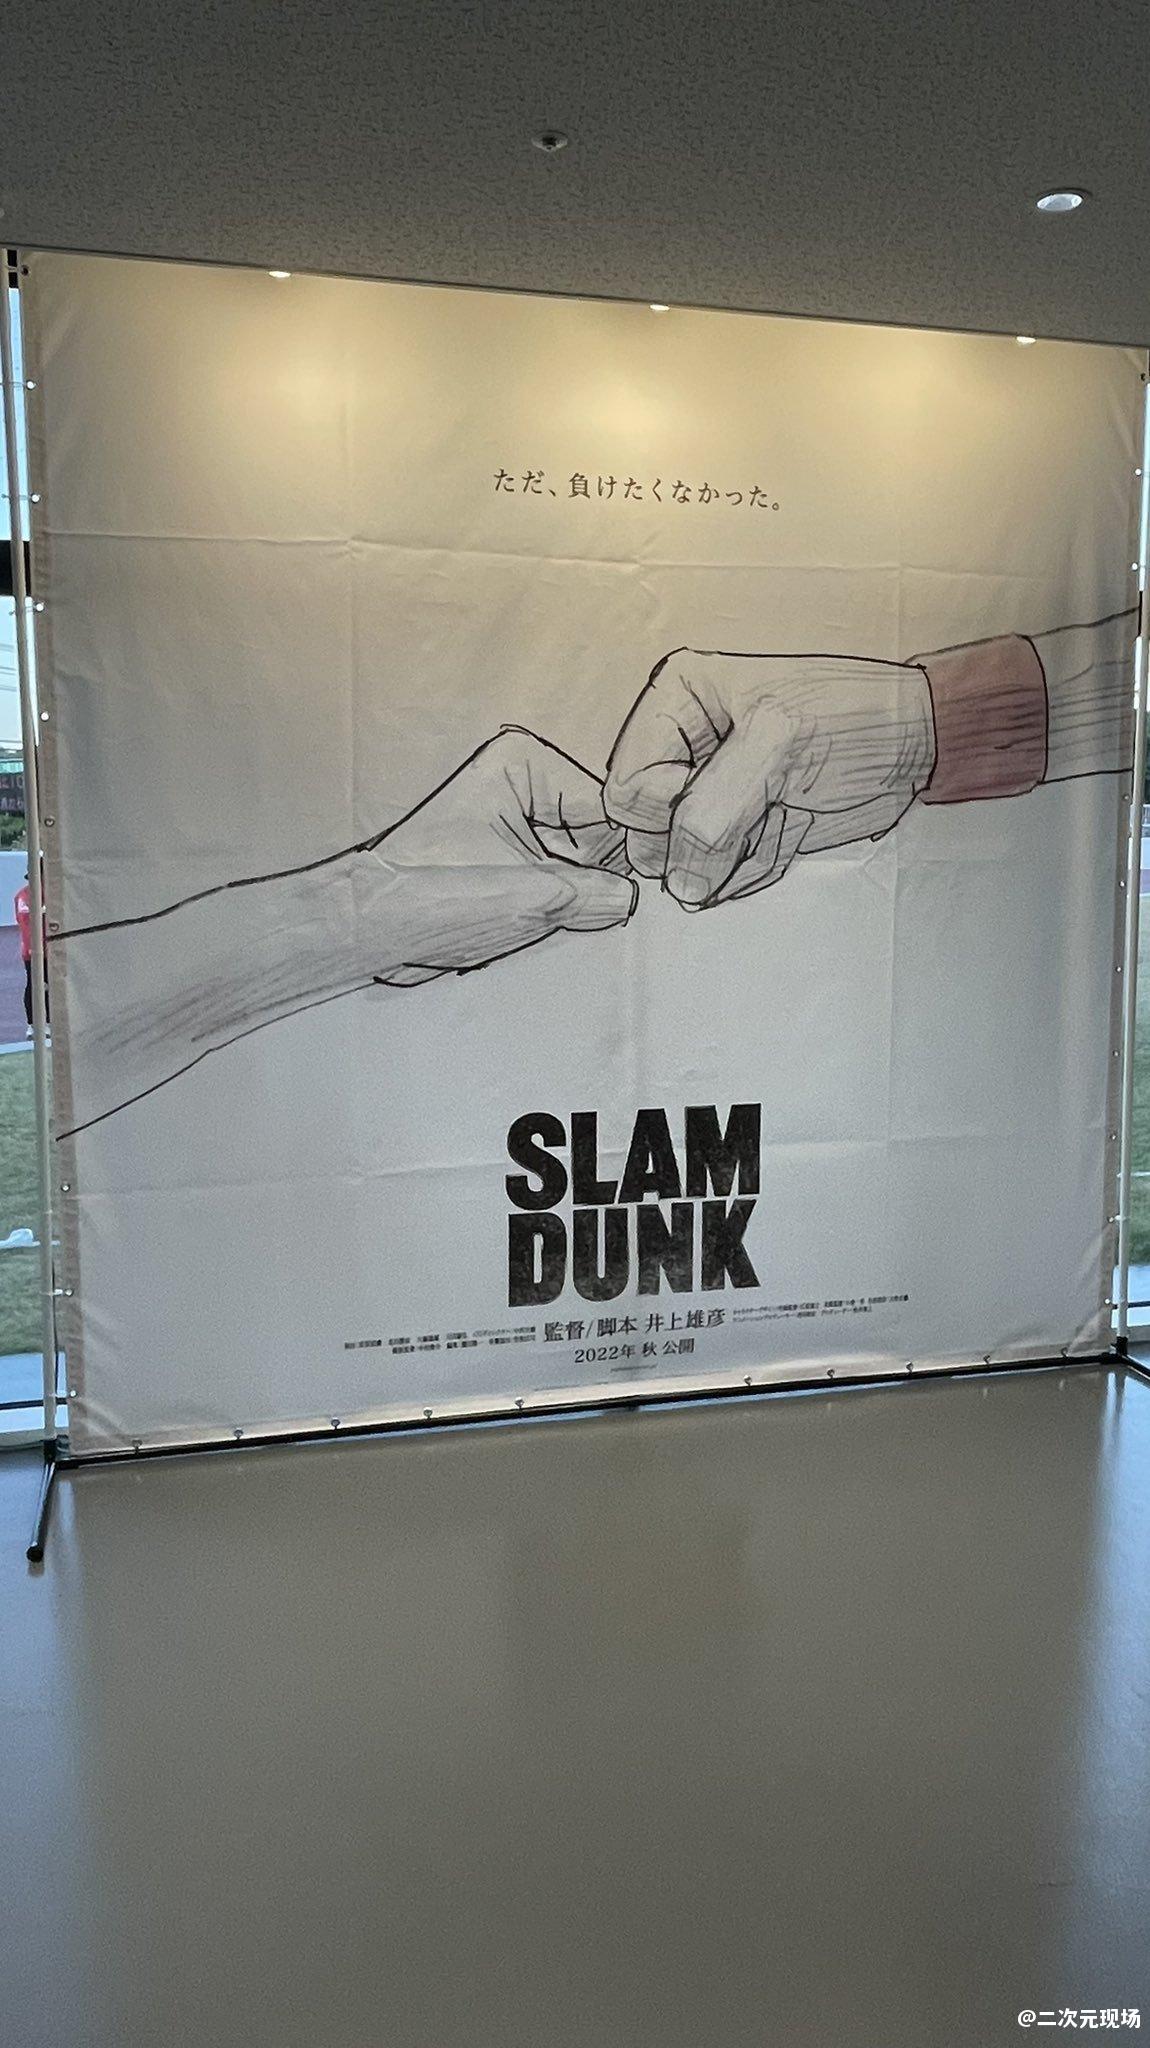 《灌篮高手》新剧场版海报在篮球联赛馆内突然公布